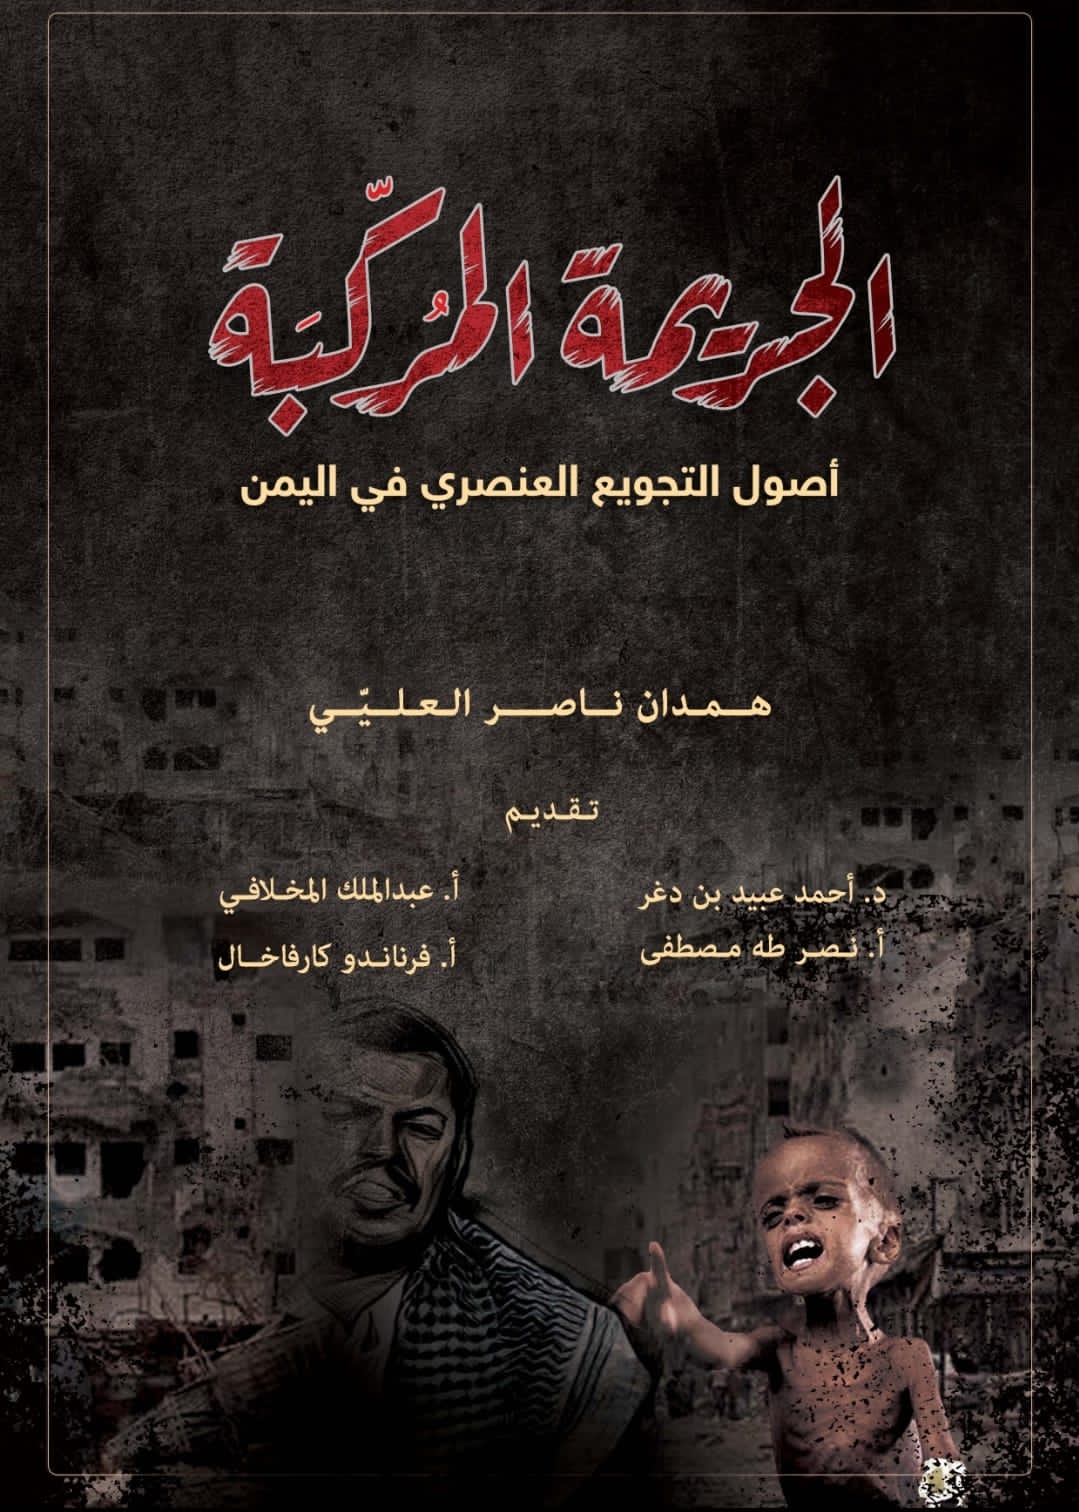 اكادميون وصحفيون يشيدون بكتاب "الجريمة المُركّبة" للكاتب همدان العليي